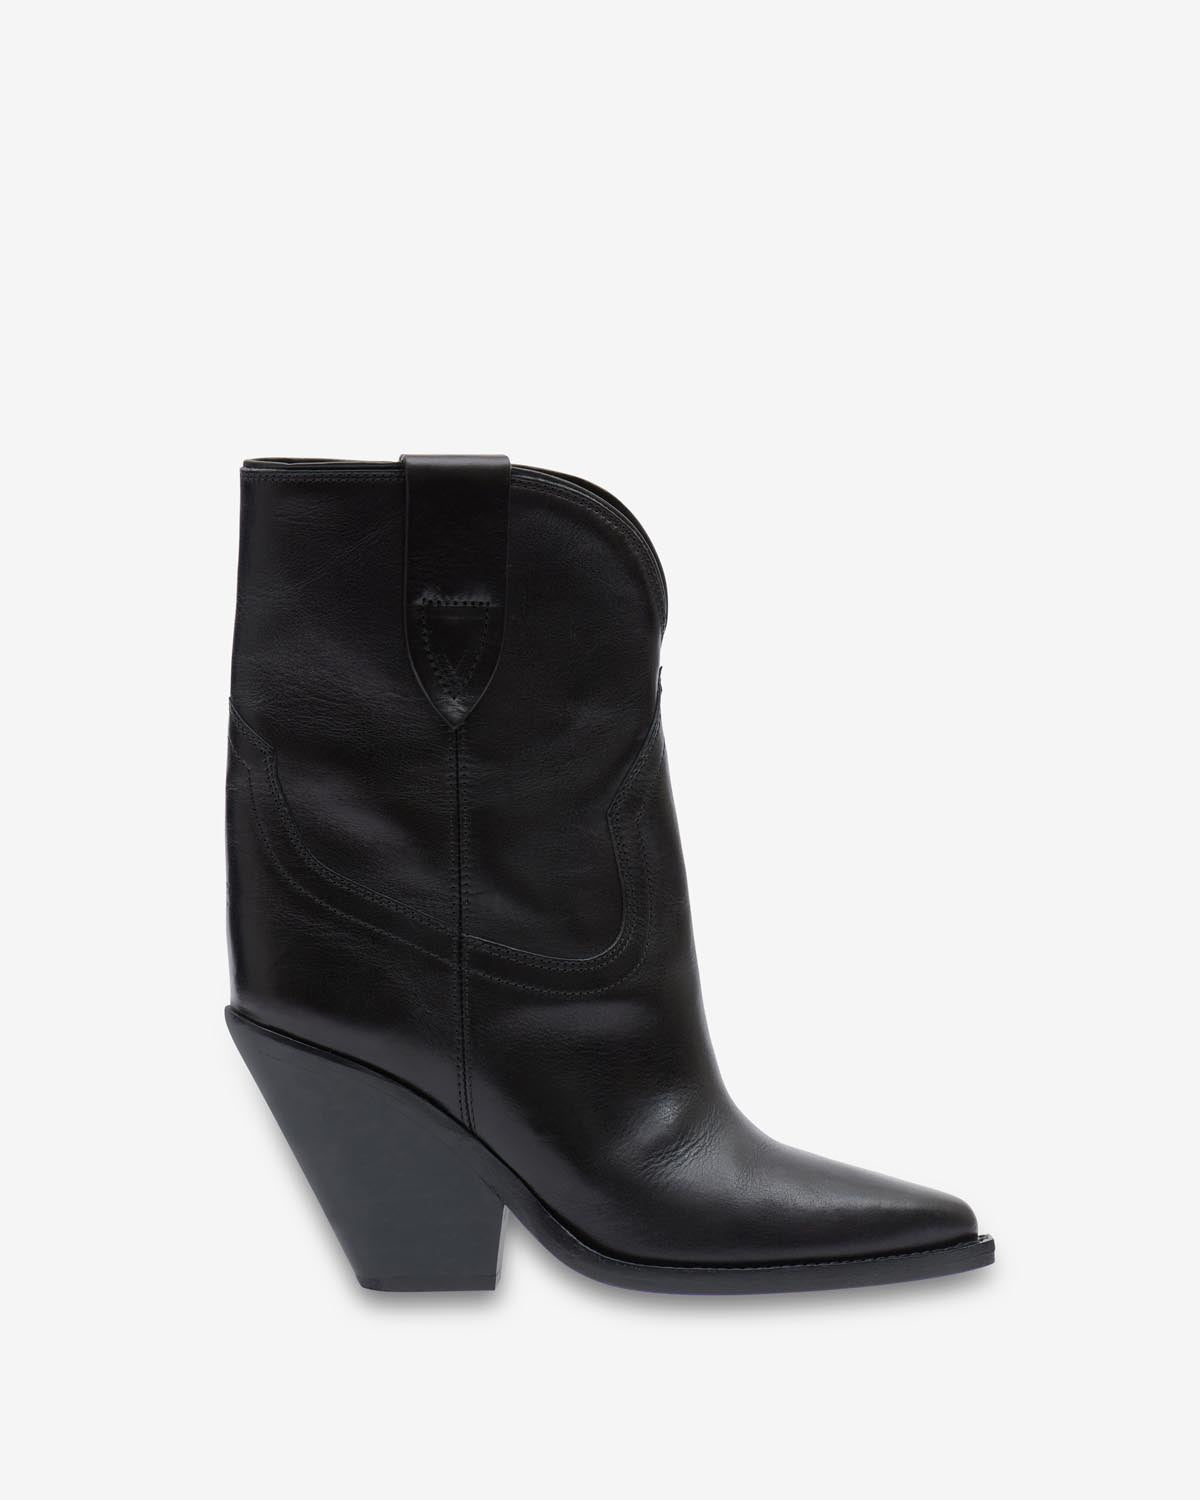 Boots leyane Woman Noir 4